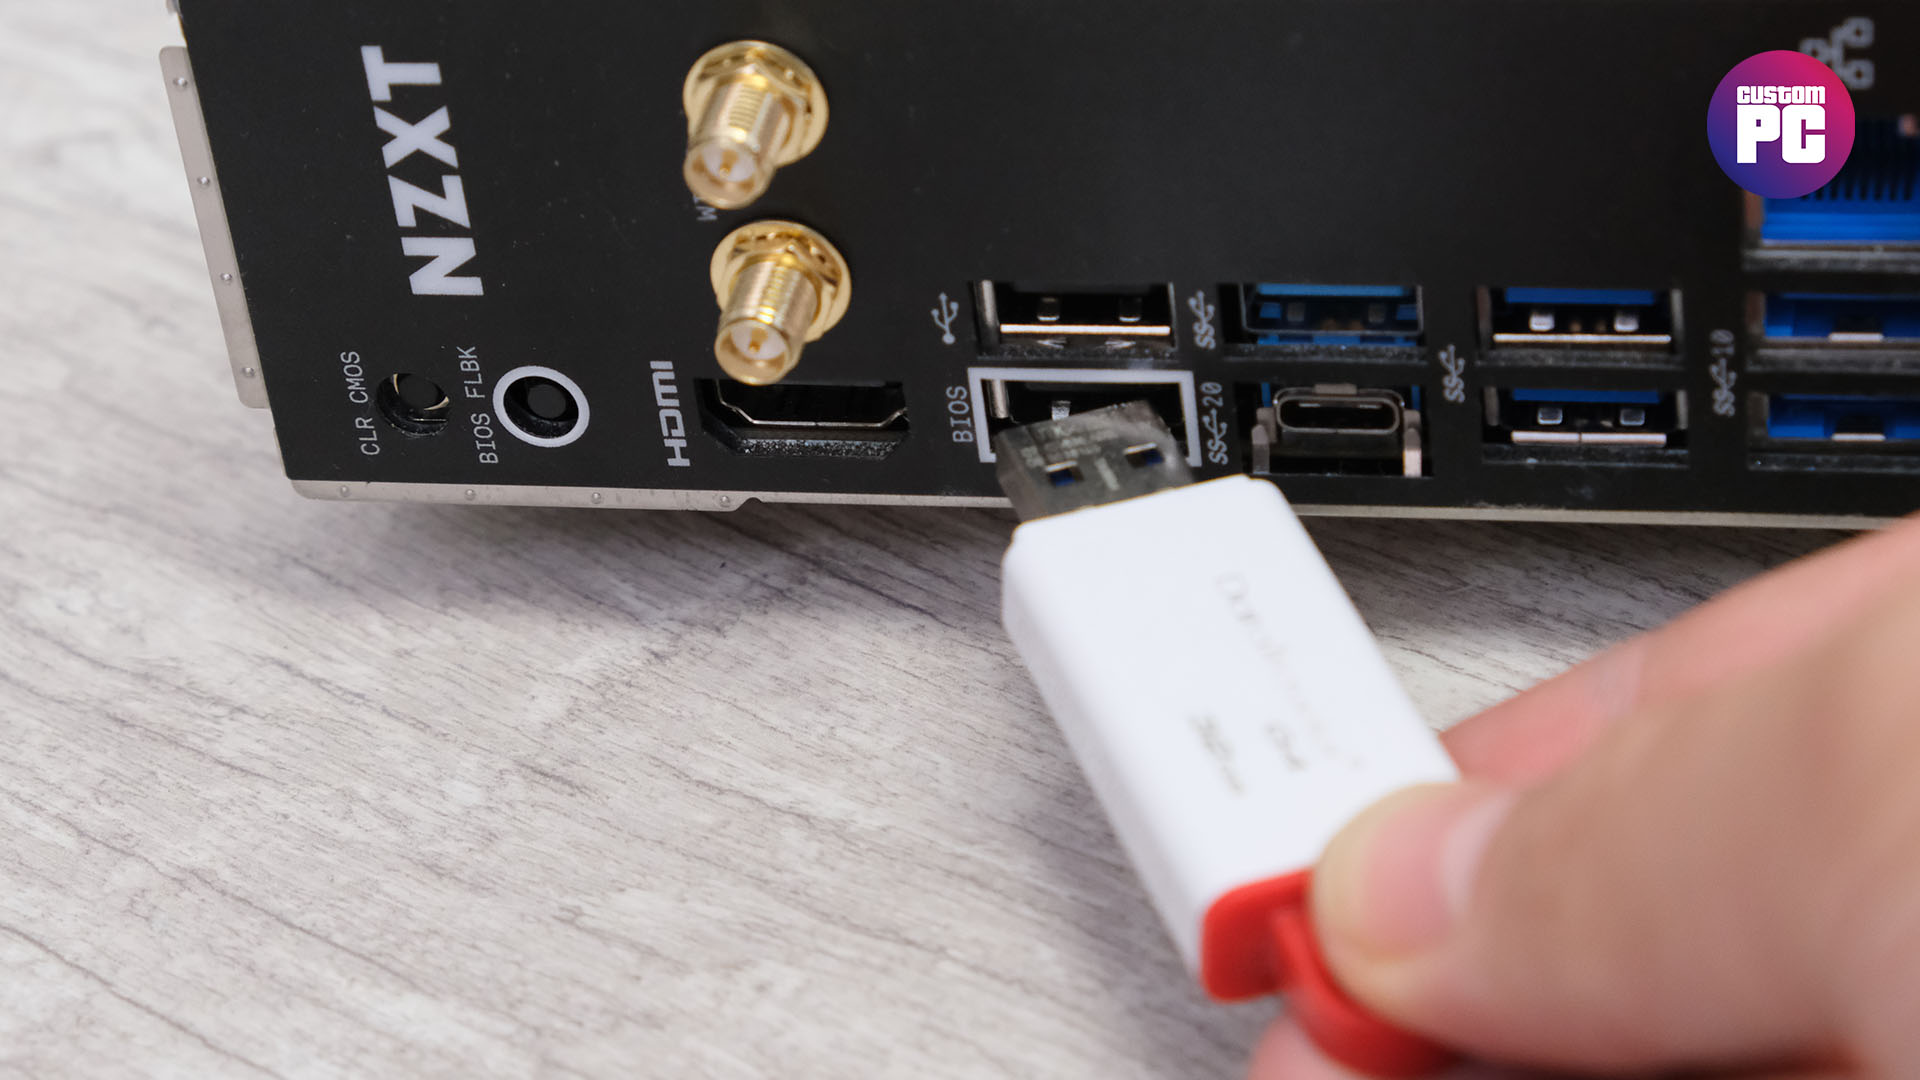 How to flash BIOS: USB BIOS flashback port